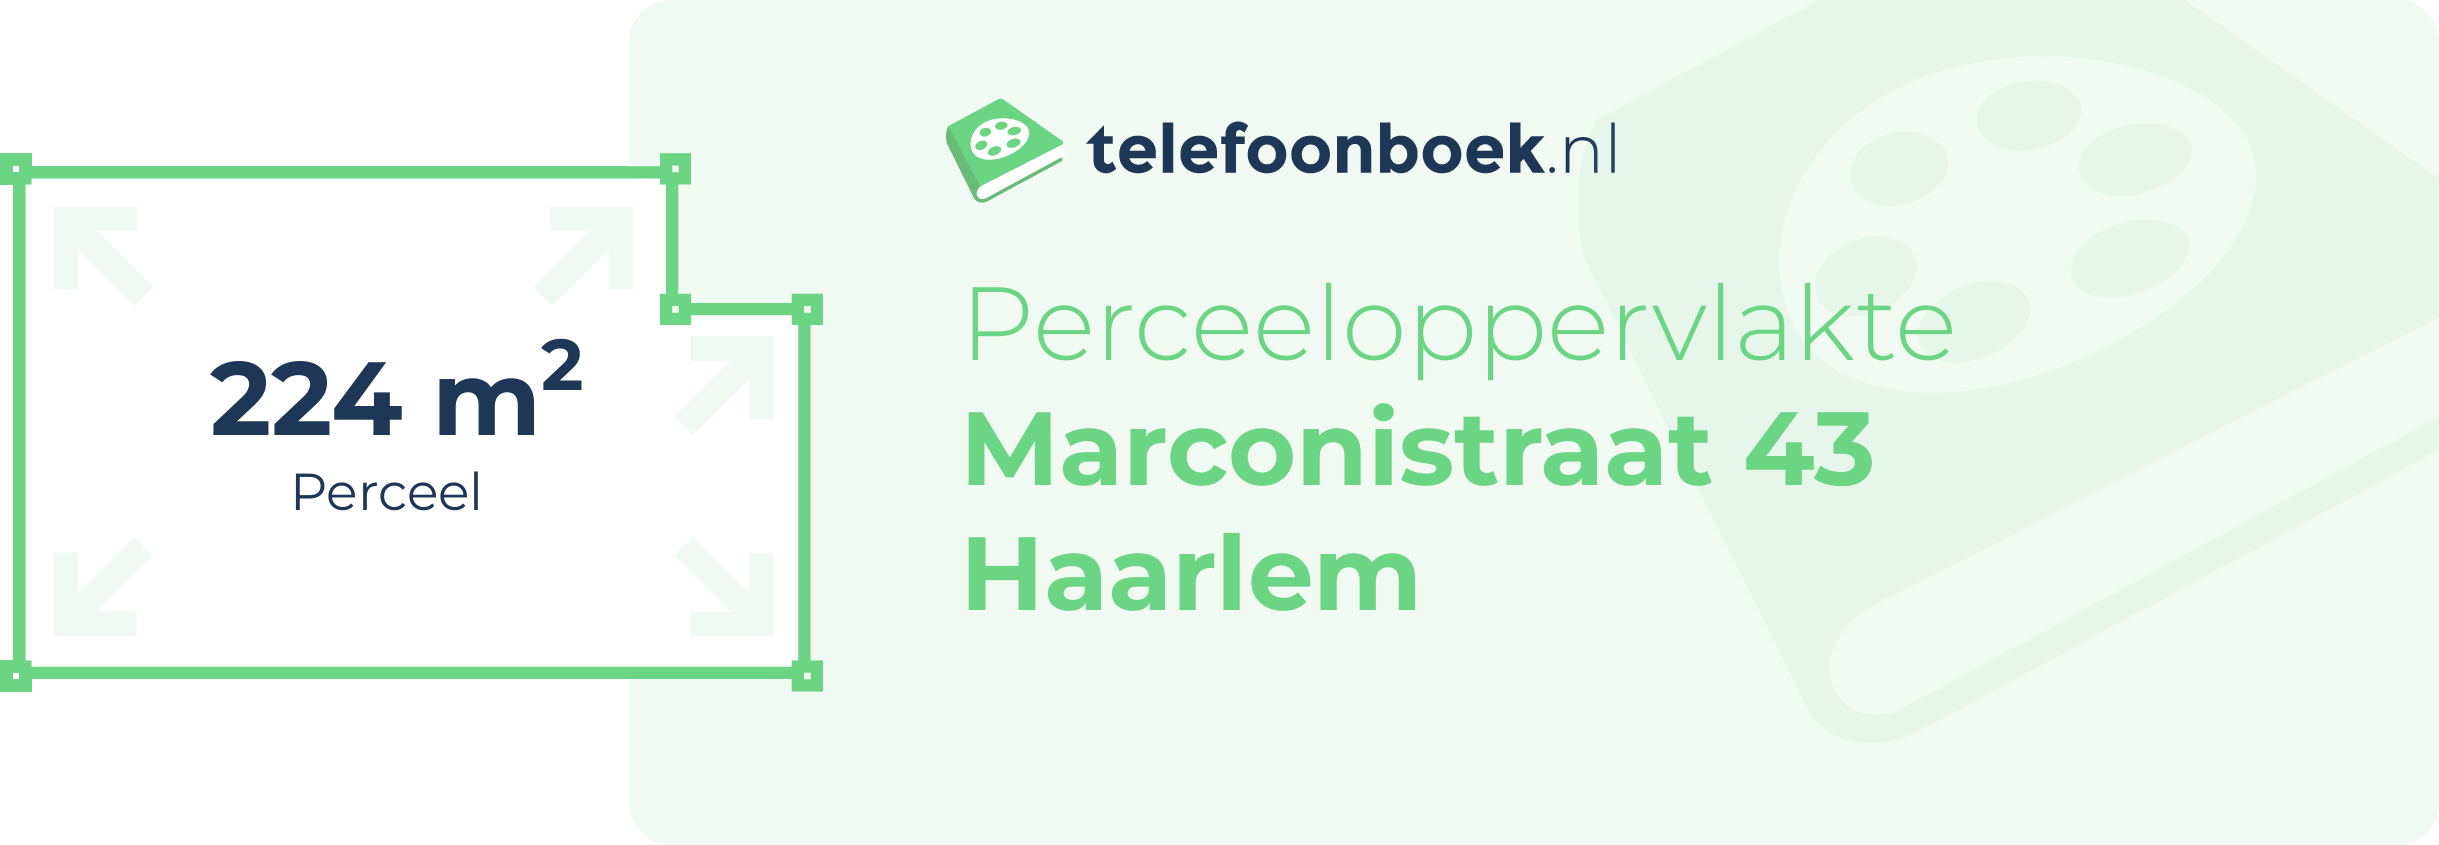 Perceeloppervlakte Marconistraat 43 Haarlem